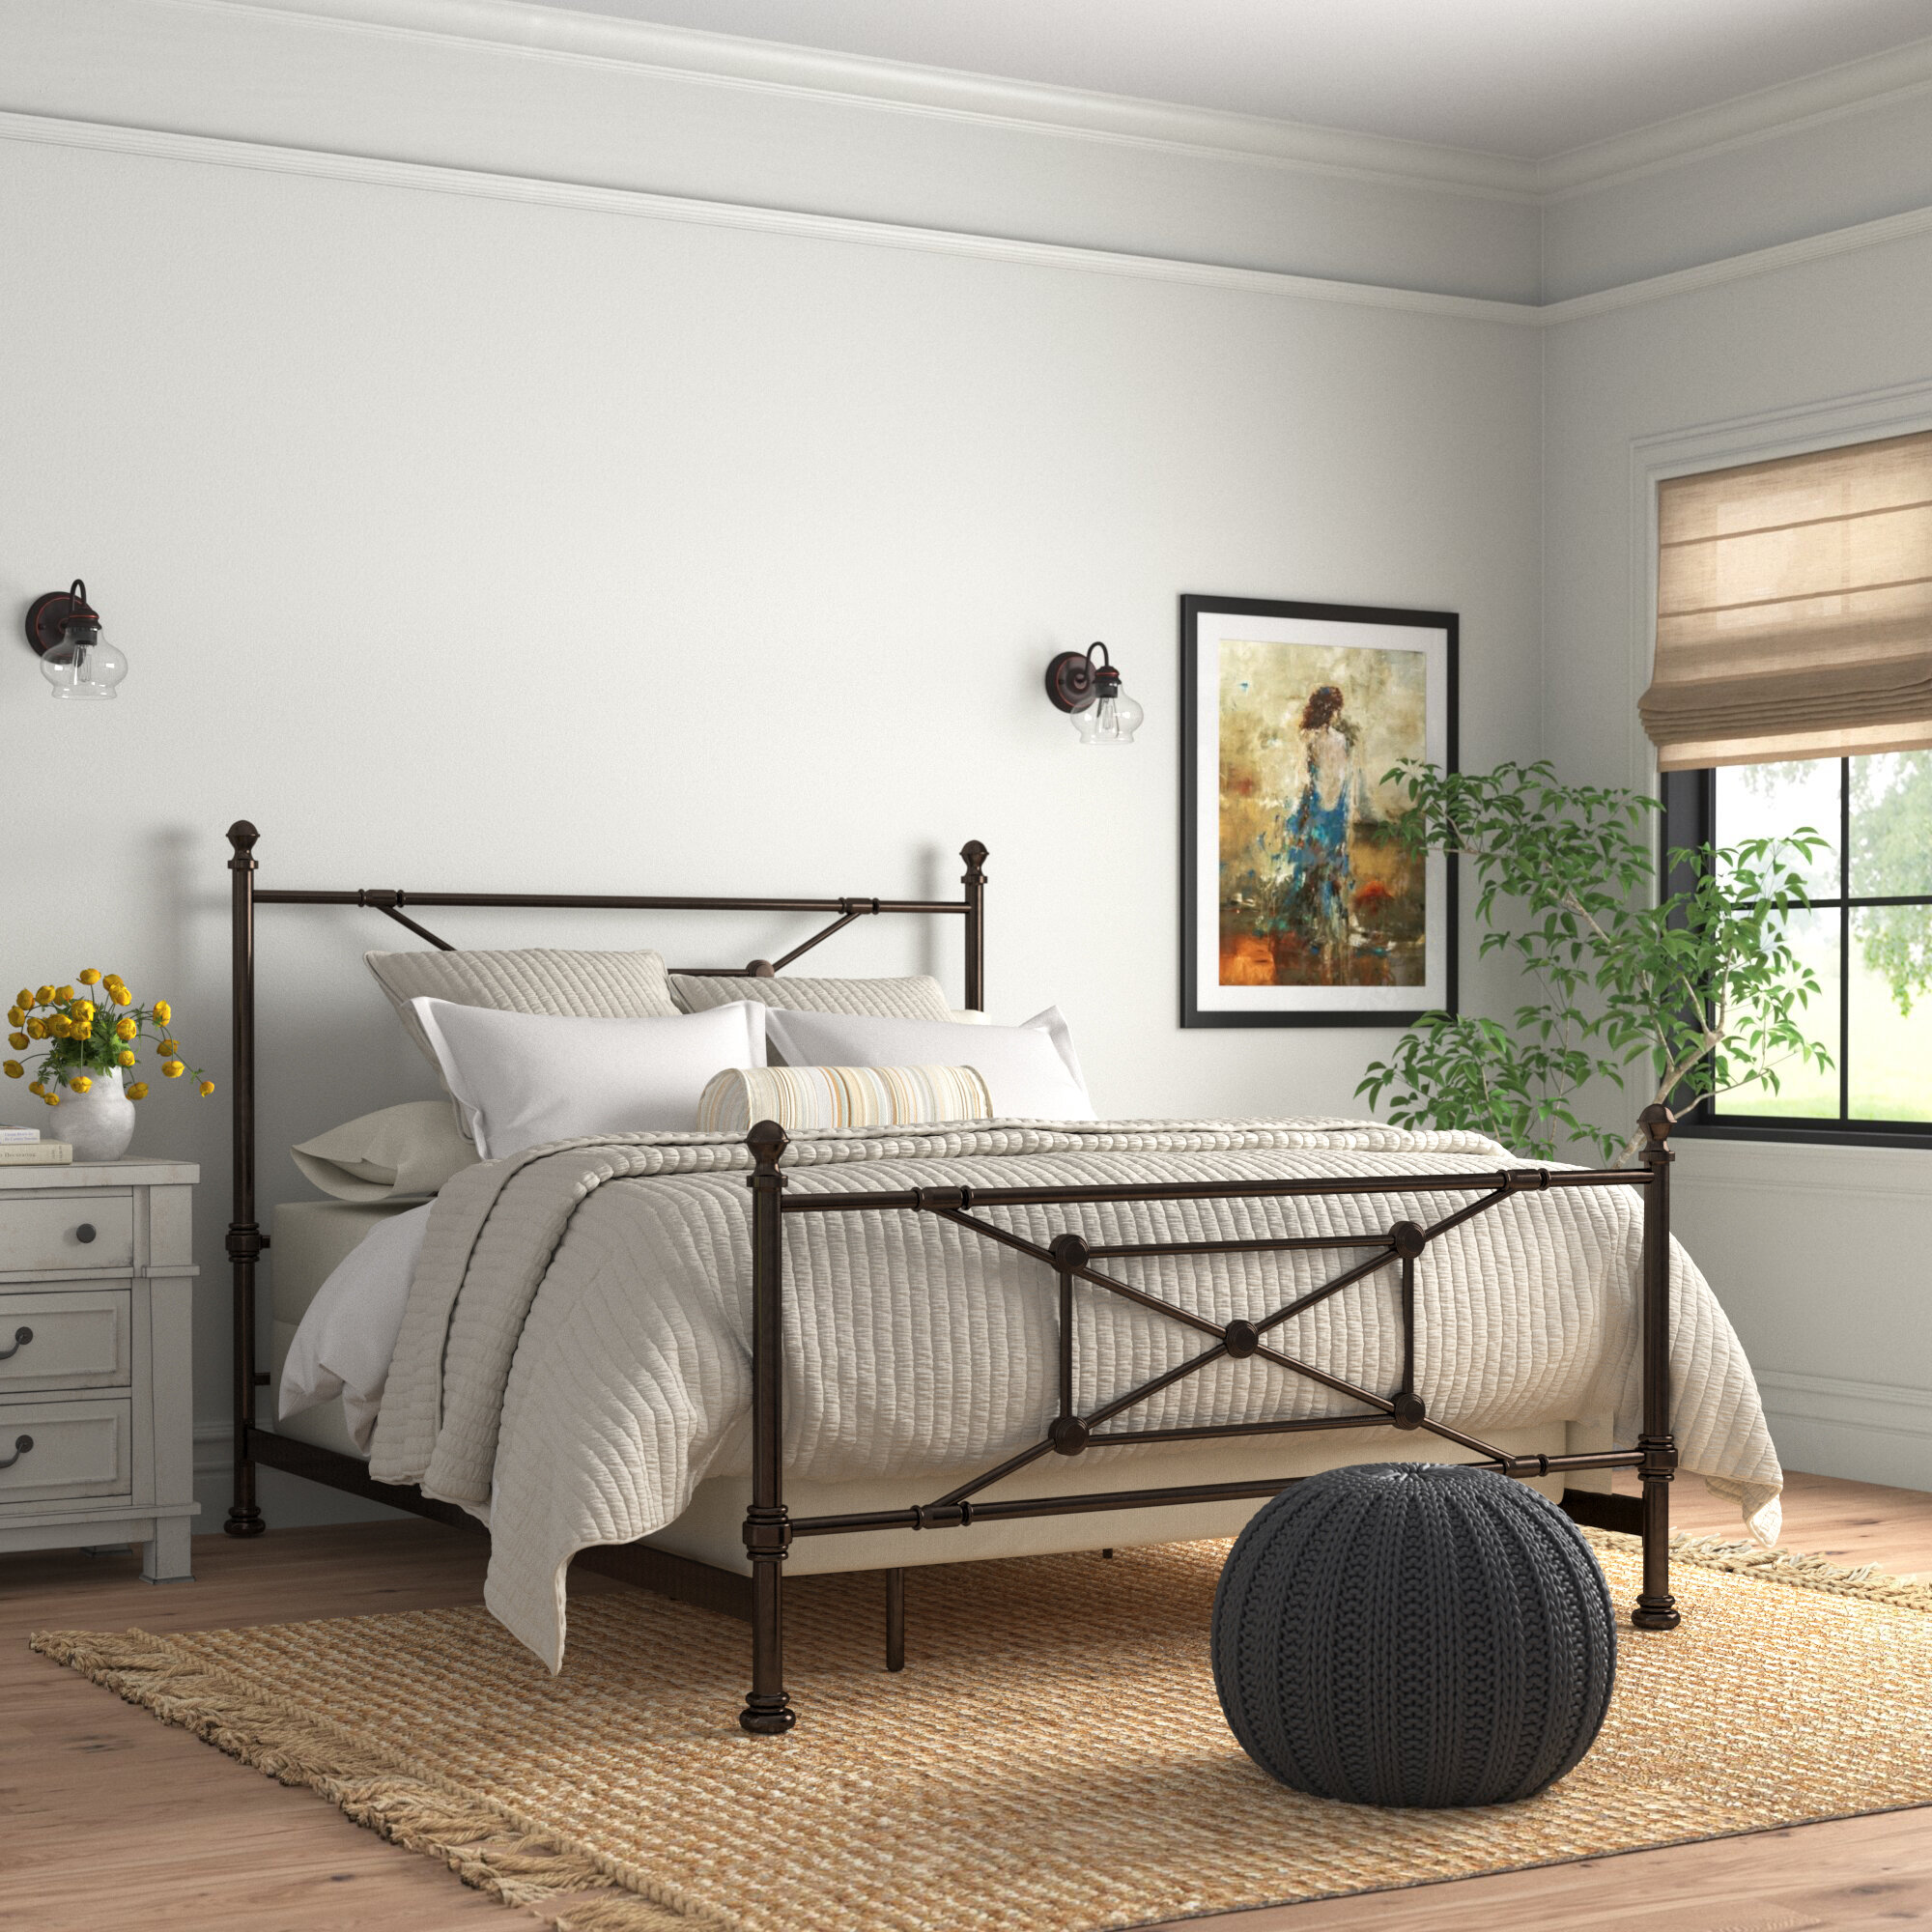 83"x42"x35" Sliver Metal Bed Platform Frame Twin Size Bedroom Home Furniture New 